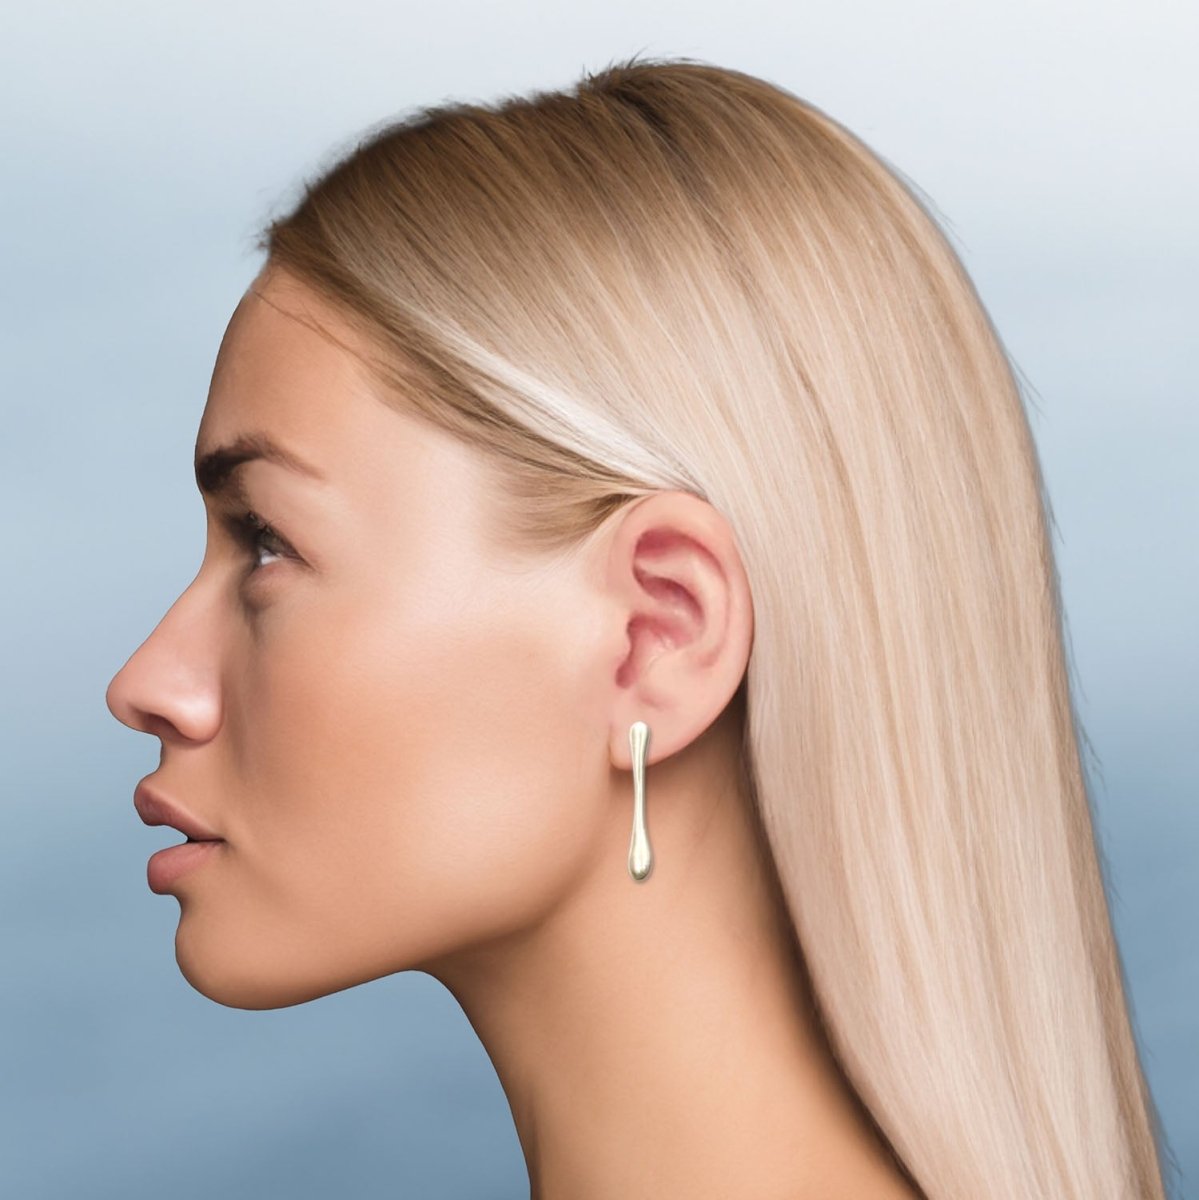 Fairy Bone Medium Post Earrings in Sterling Silver - Luxe Design Jewellery